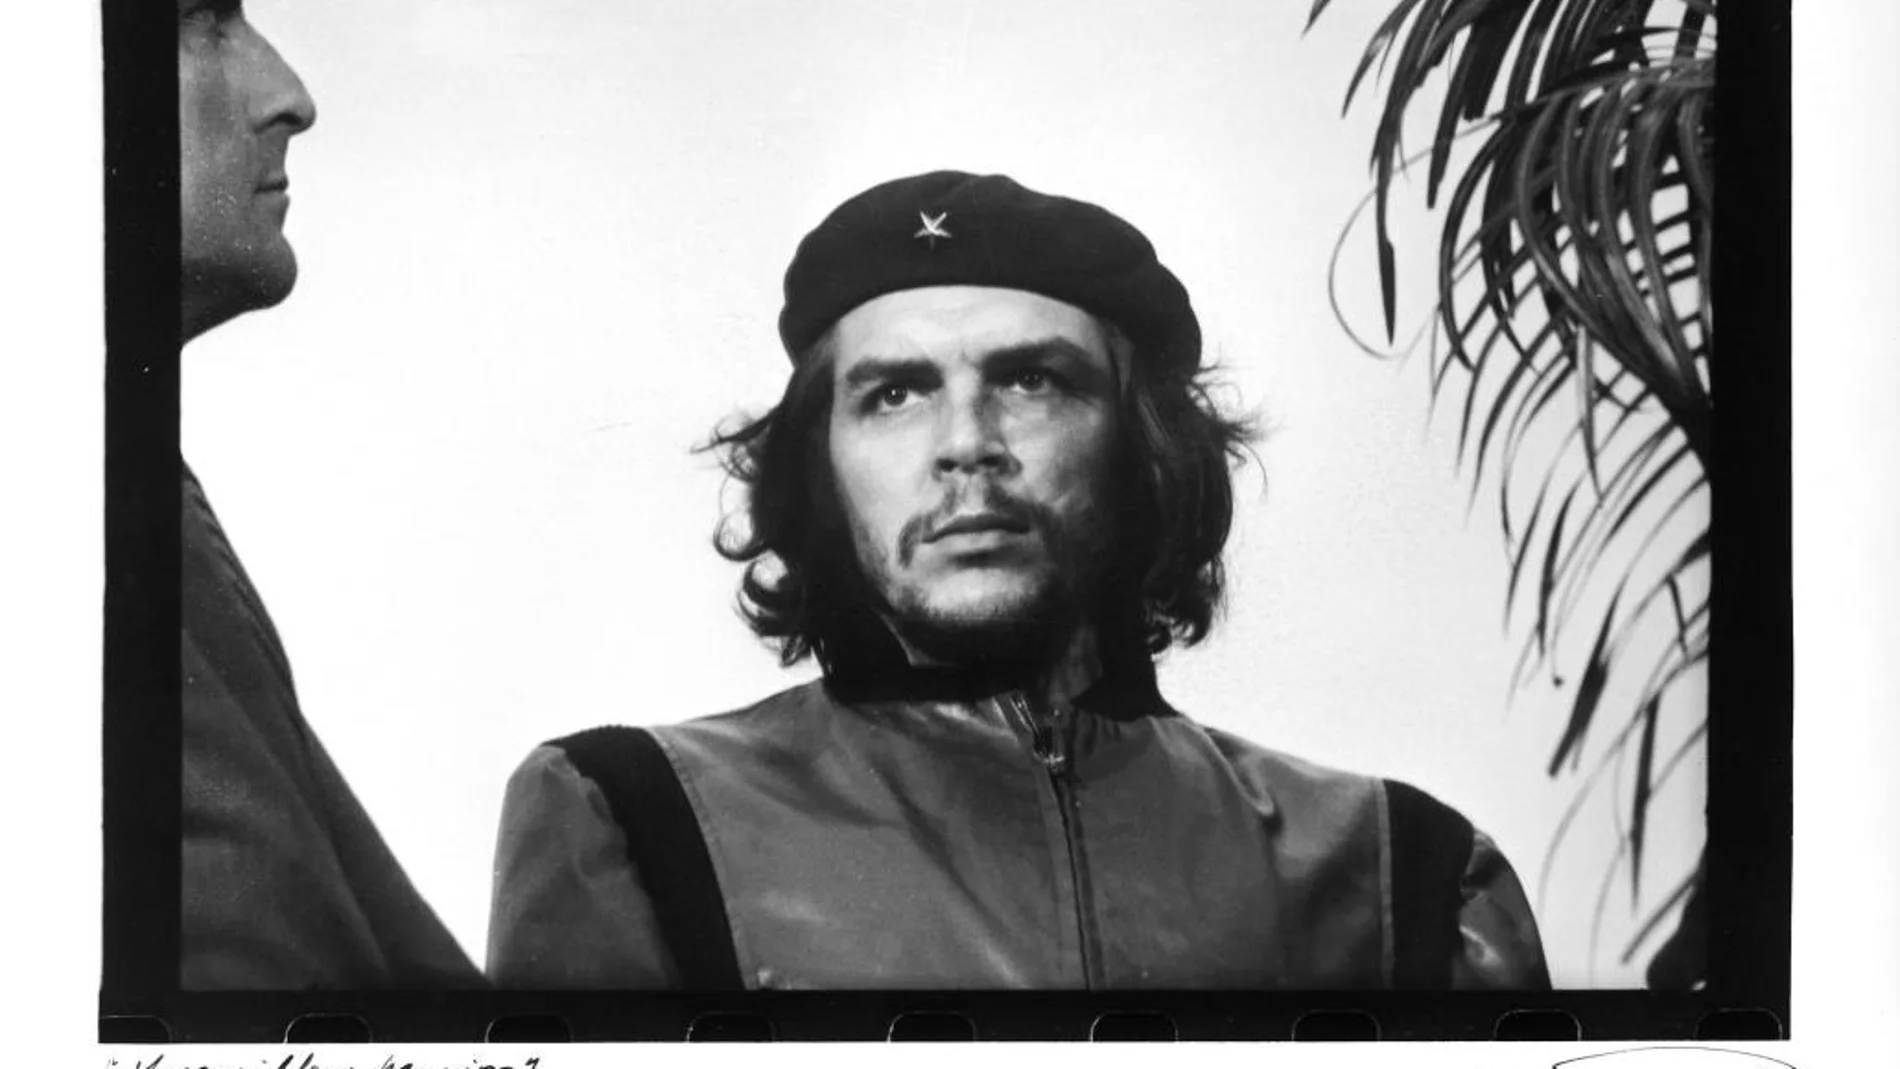 ICÓNICO. La imagen que Alberto Korda tomó en 1960 del Che bajo el título «Guerrillero heroico» ha servido para propagar su figura de redentor de los oprimidos a través del merchandising